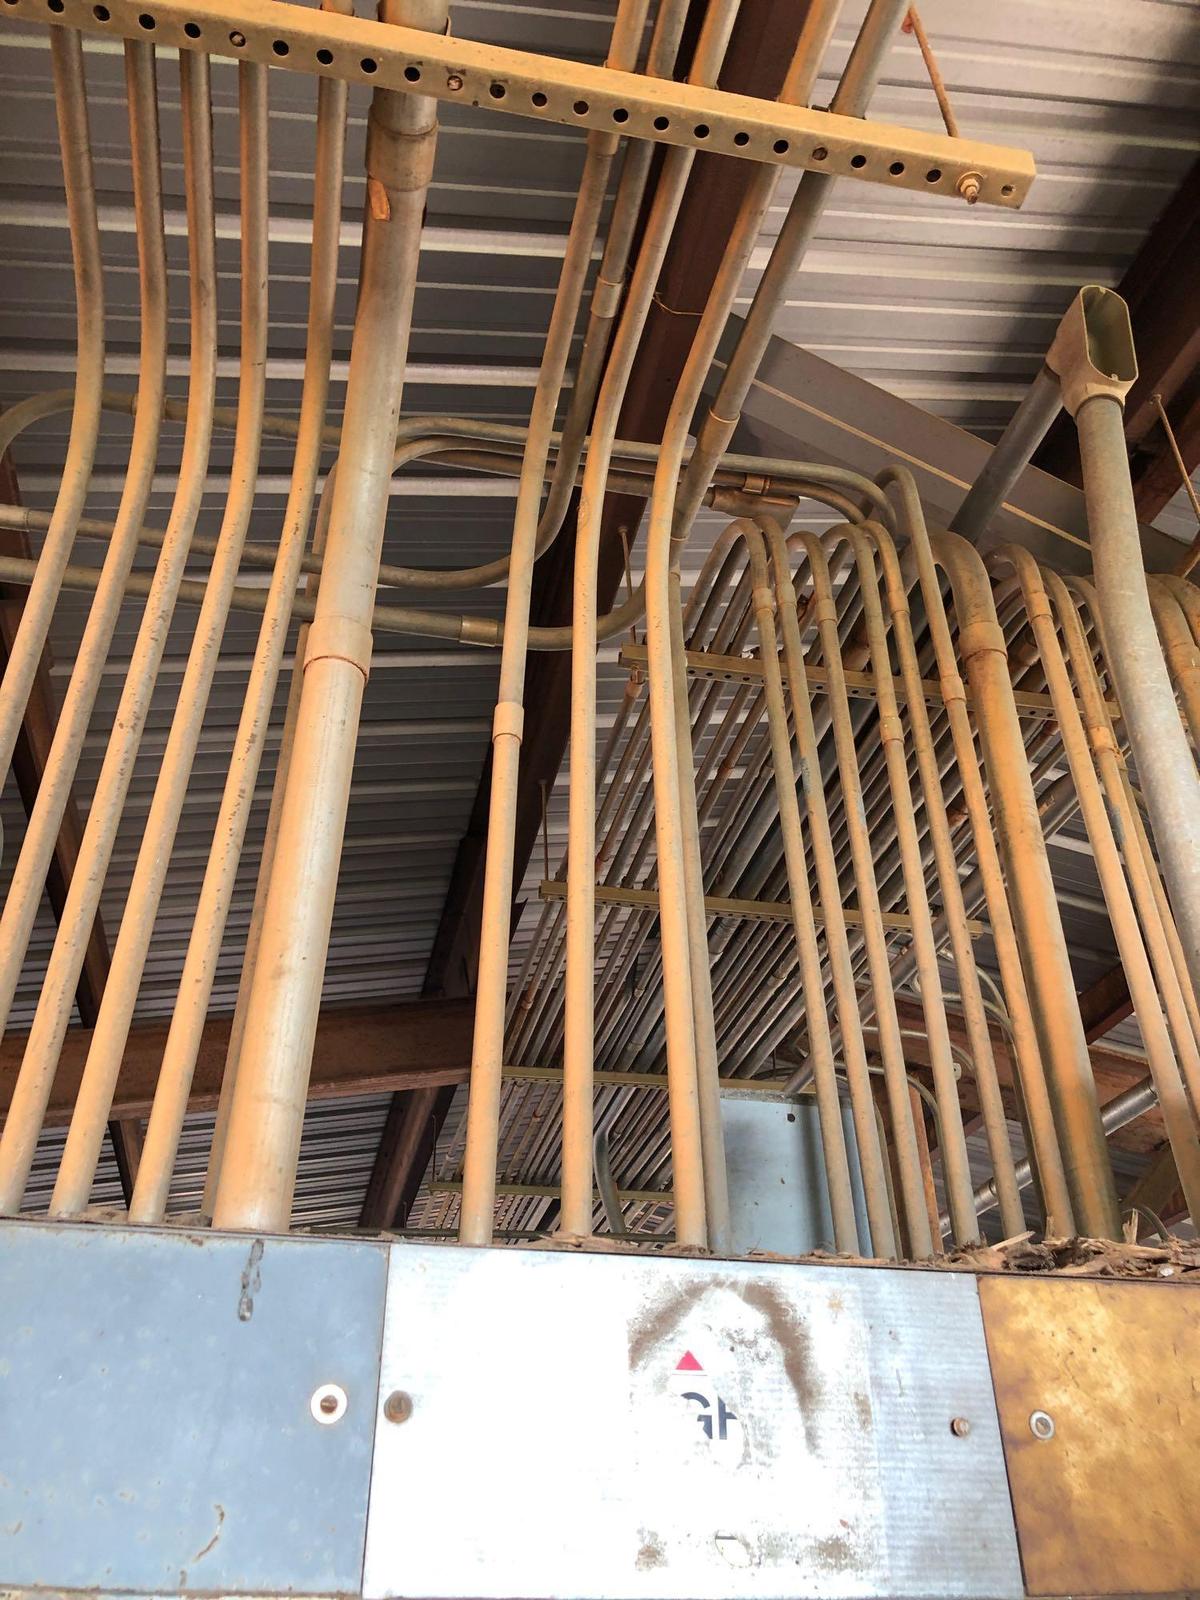 All copper wire & conduit in building